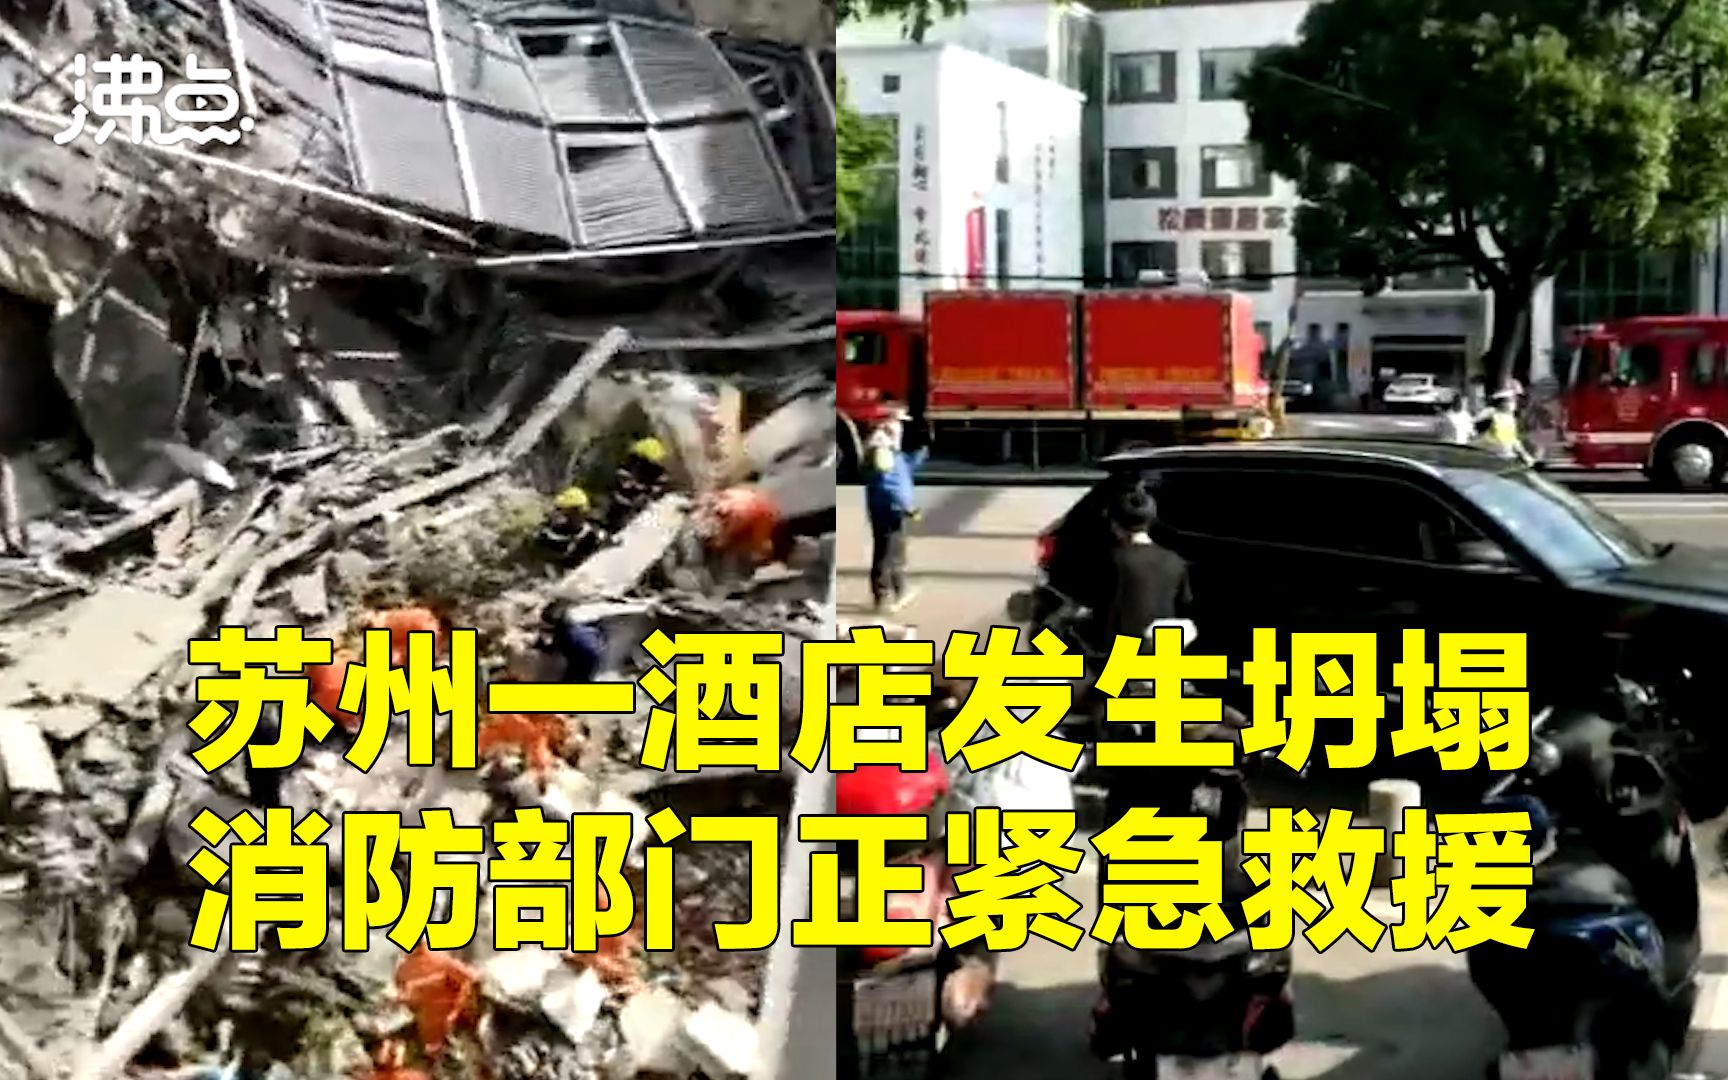 蘇州酒店倒塌搜救行動結束 事故釀17死5傷 - 兩岸 - 點新聞